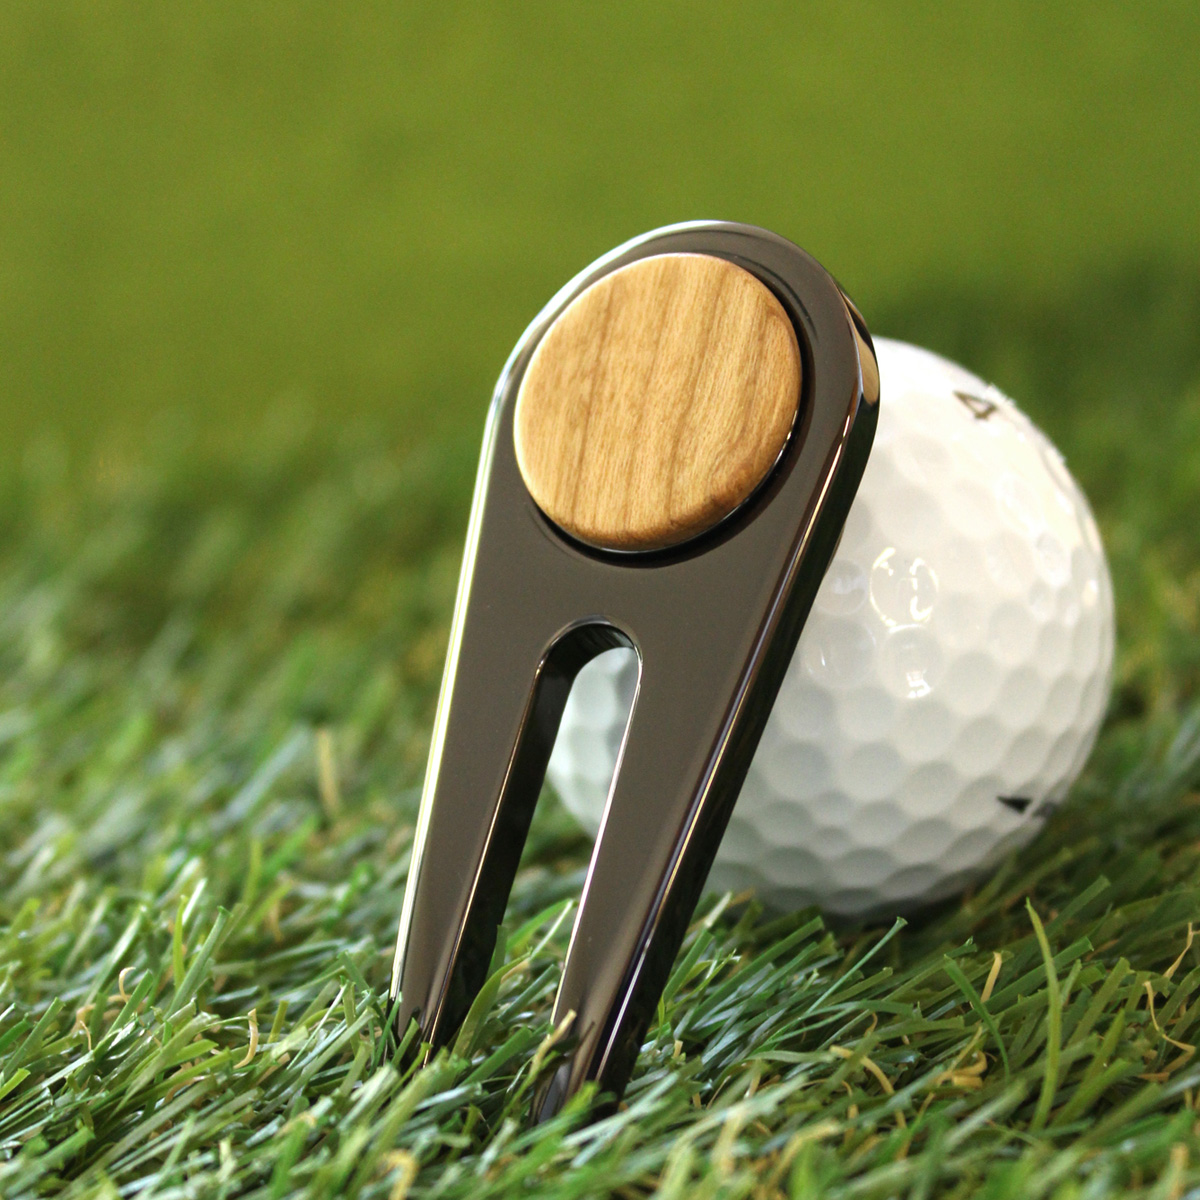 ゴルファーの必需品、木製グリーンフォーク「Golf Green Fork」